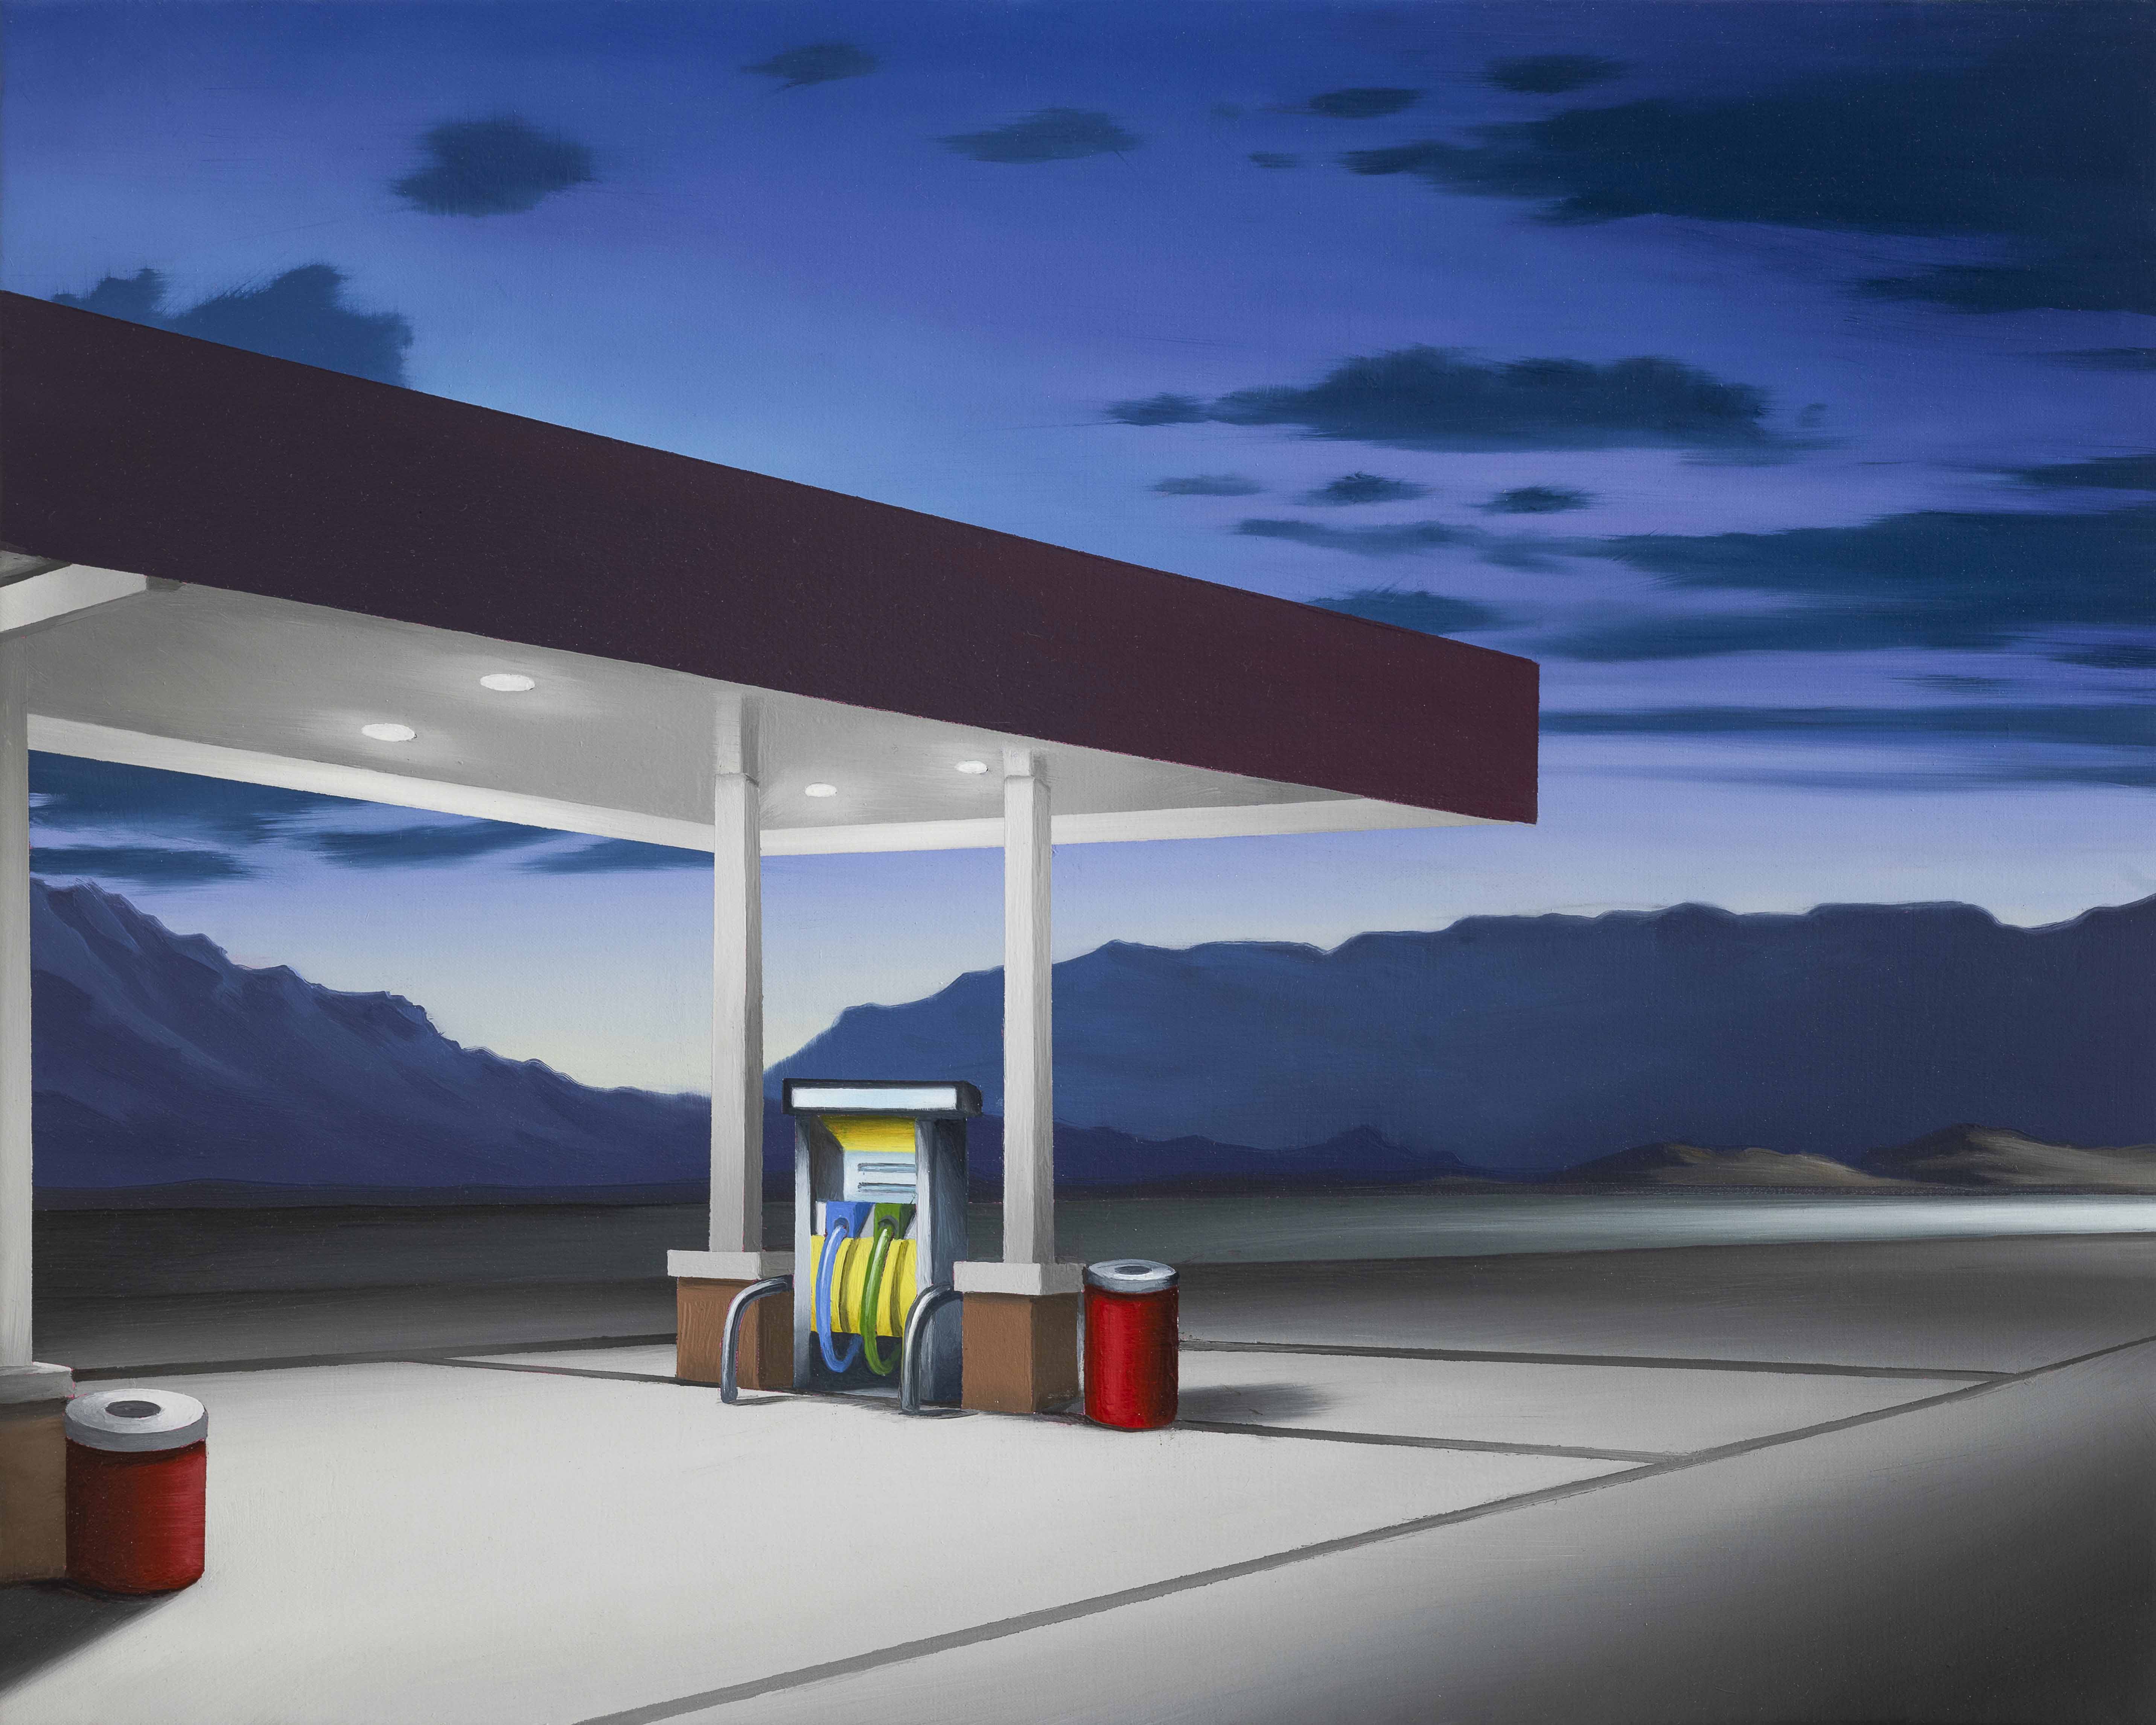 Gasoline is white - Midnight oil